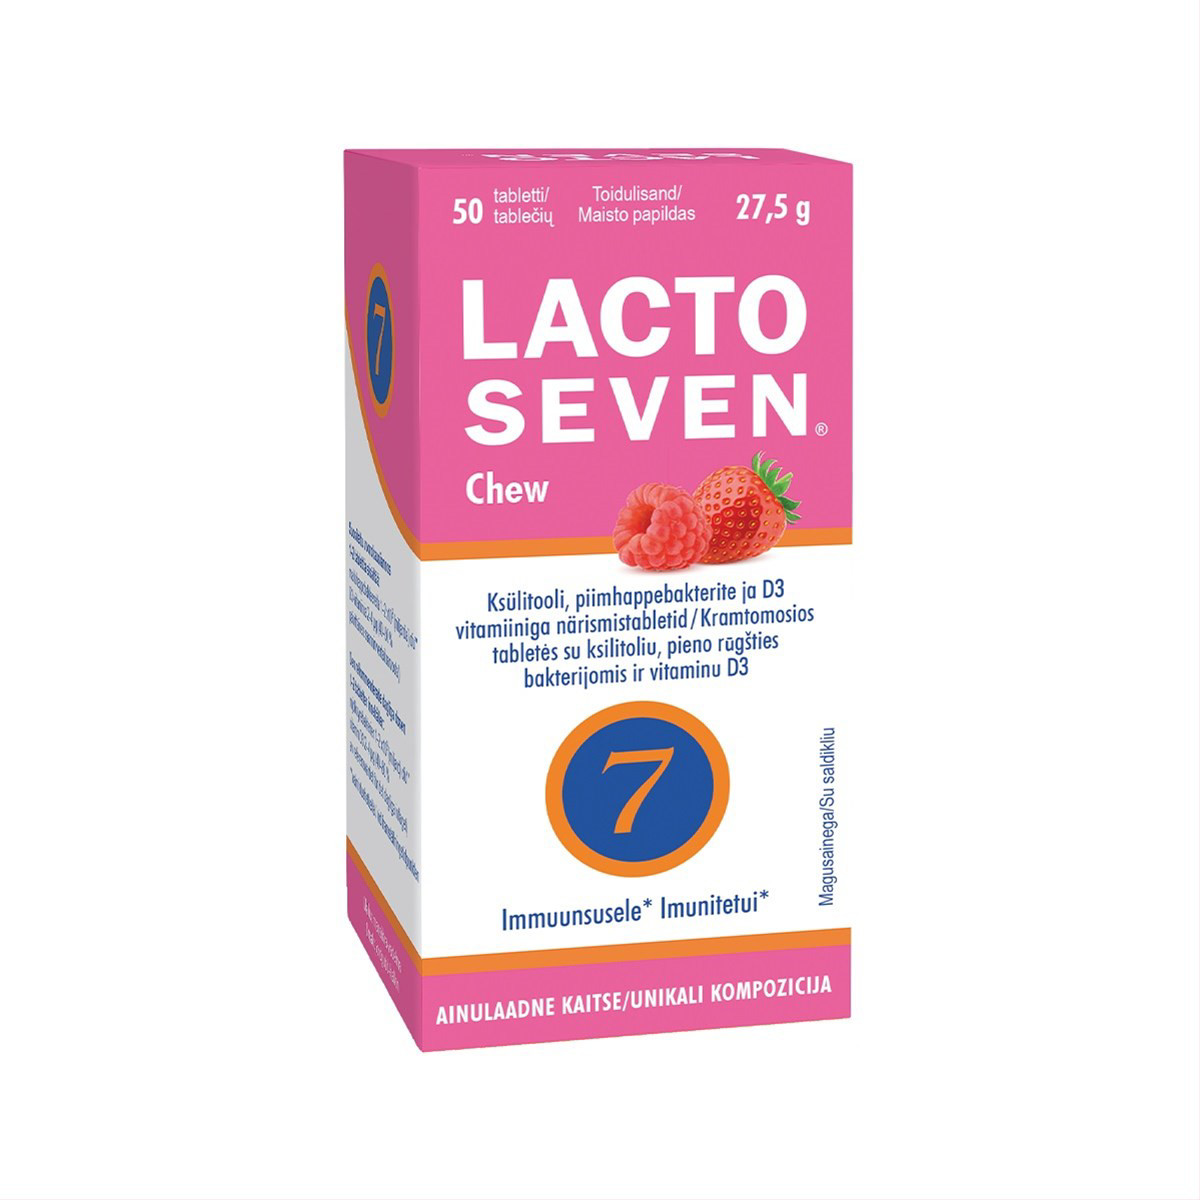 LACTO SEVEN CHEW, 50 tablečių